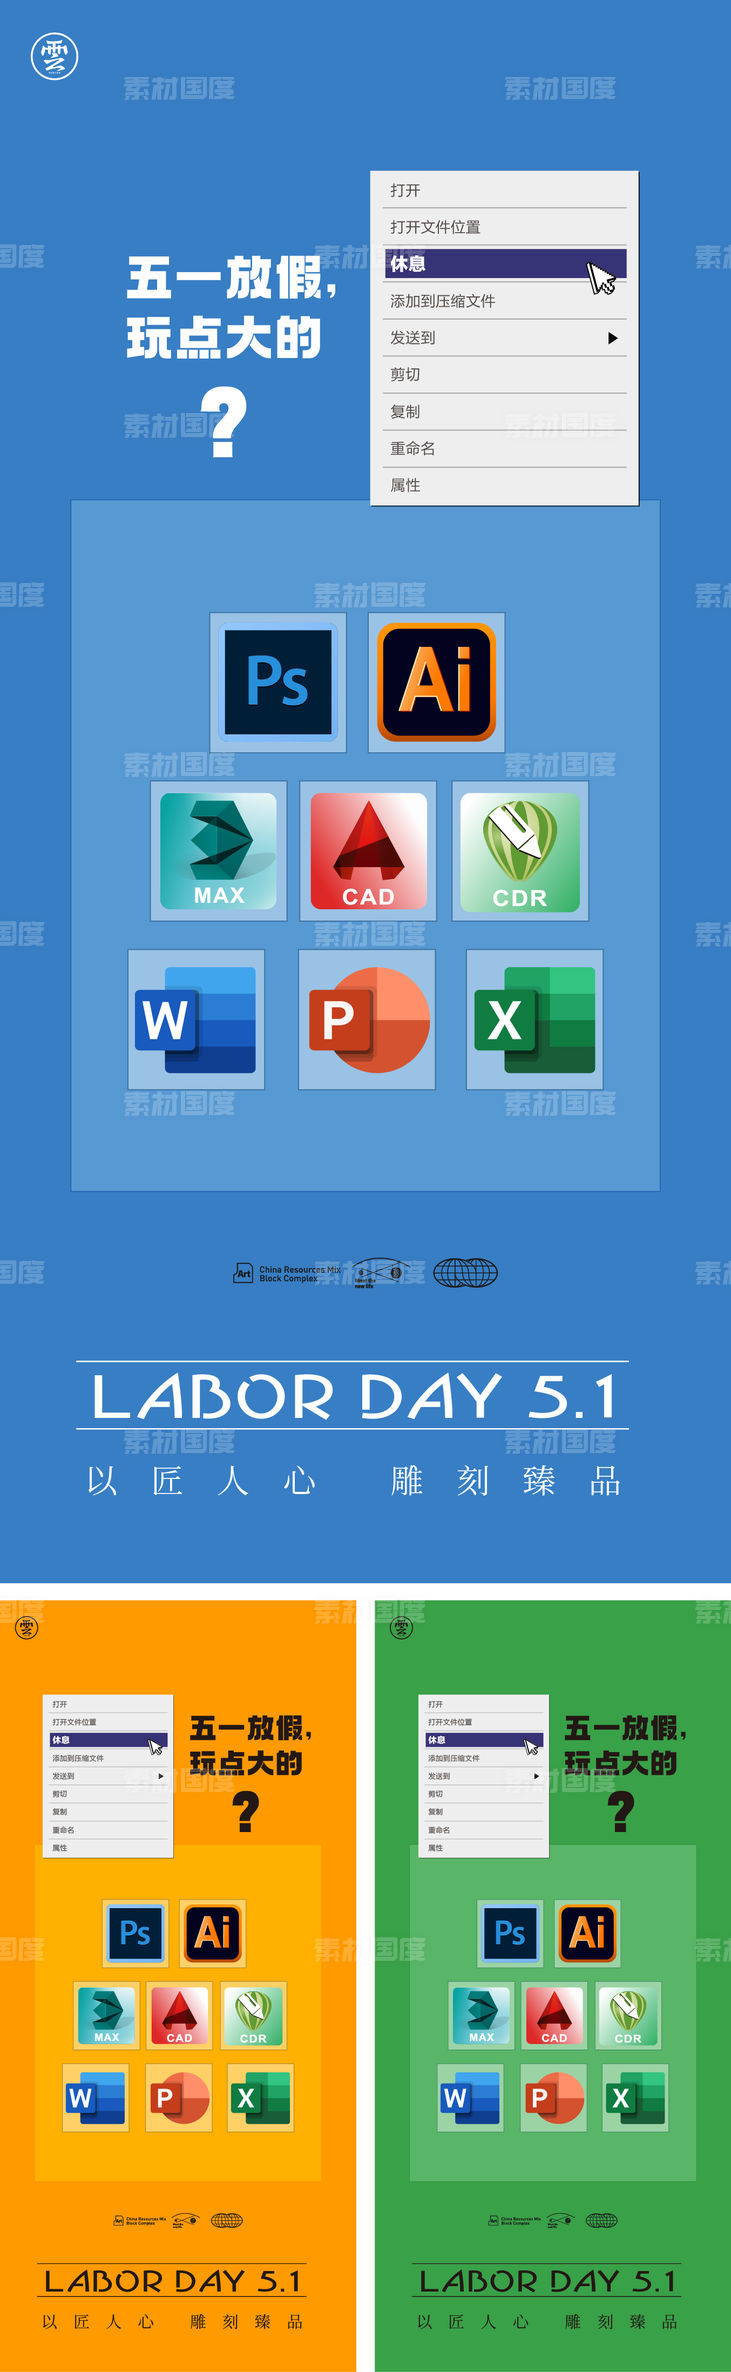 51 劳动节 五一 软件 图标 放假 创意 icon 简约